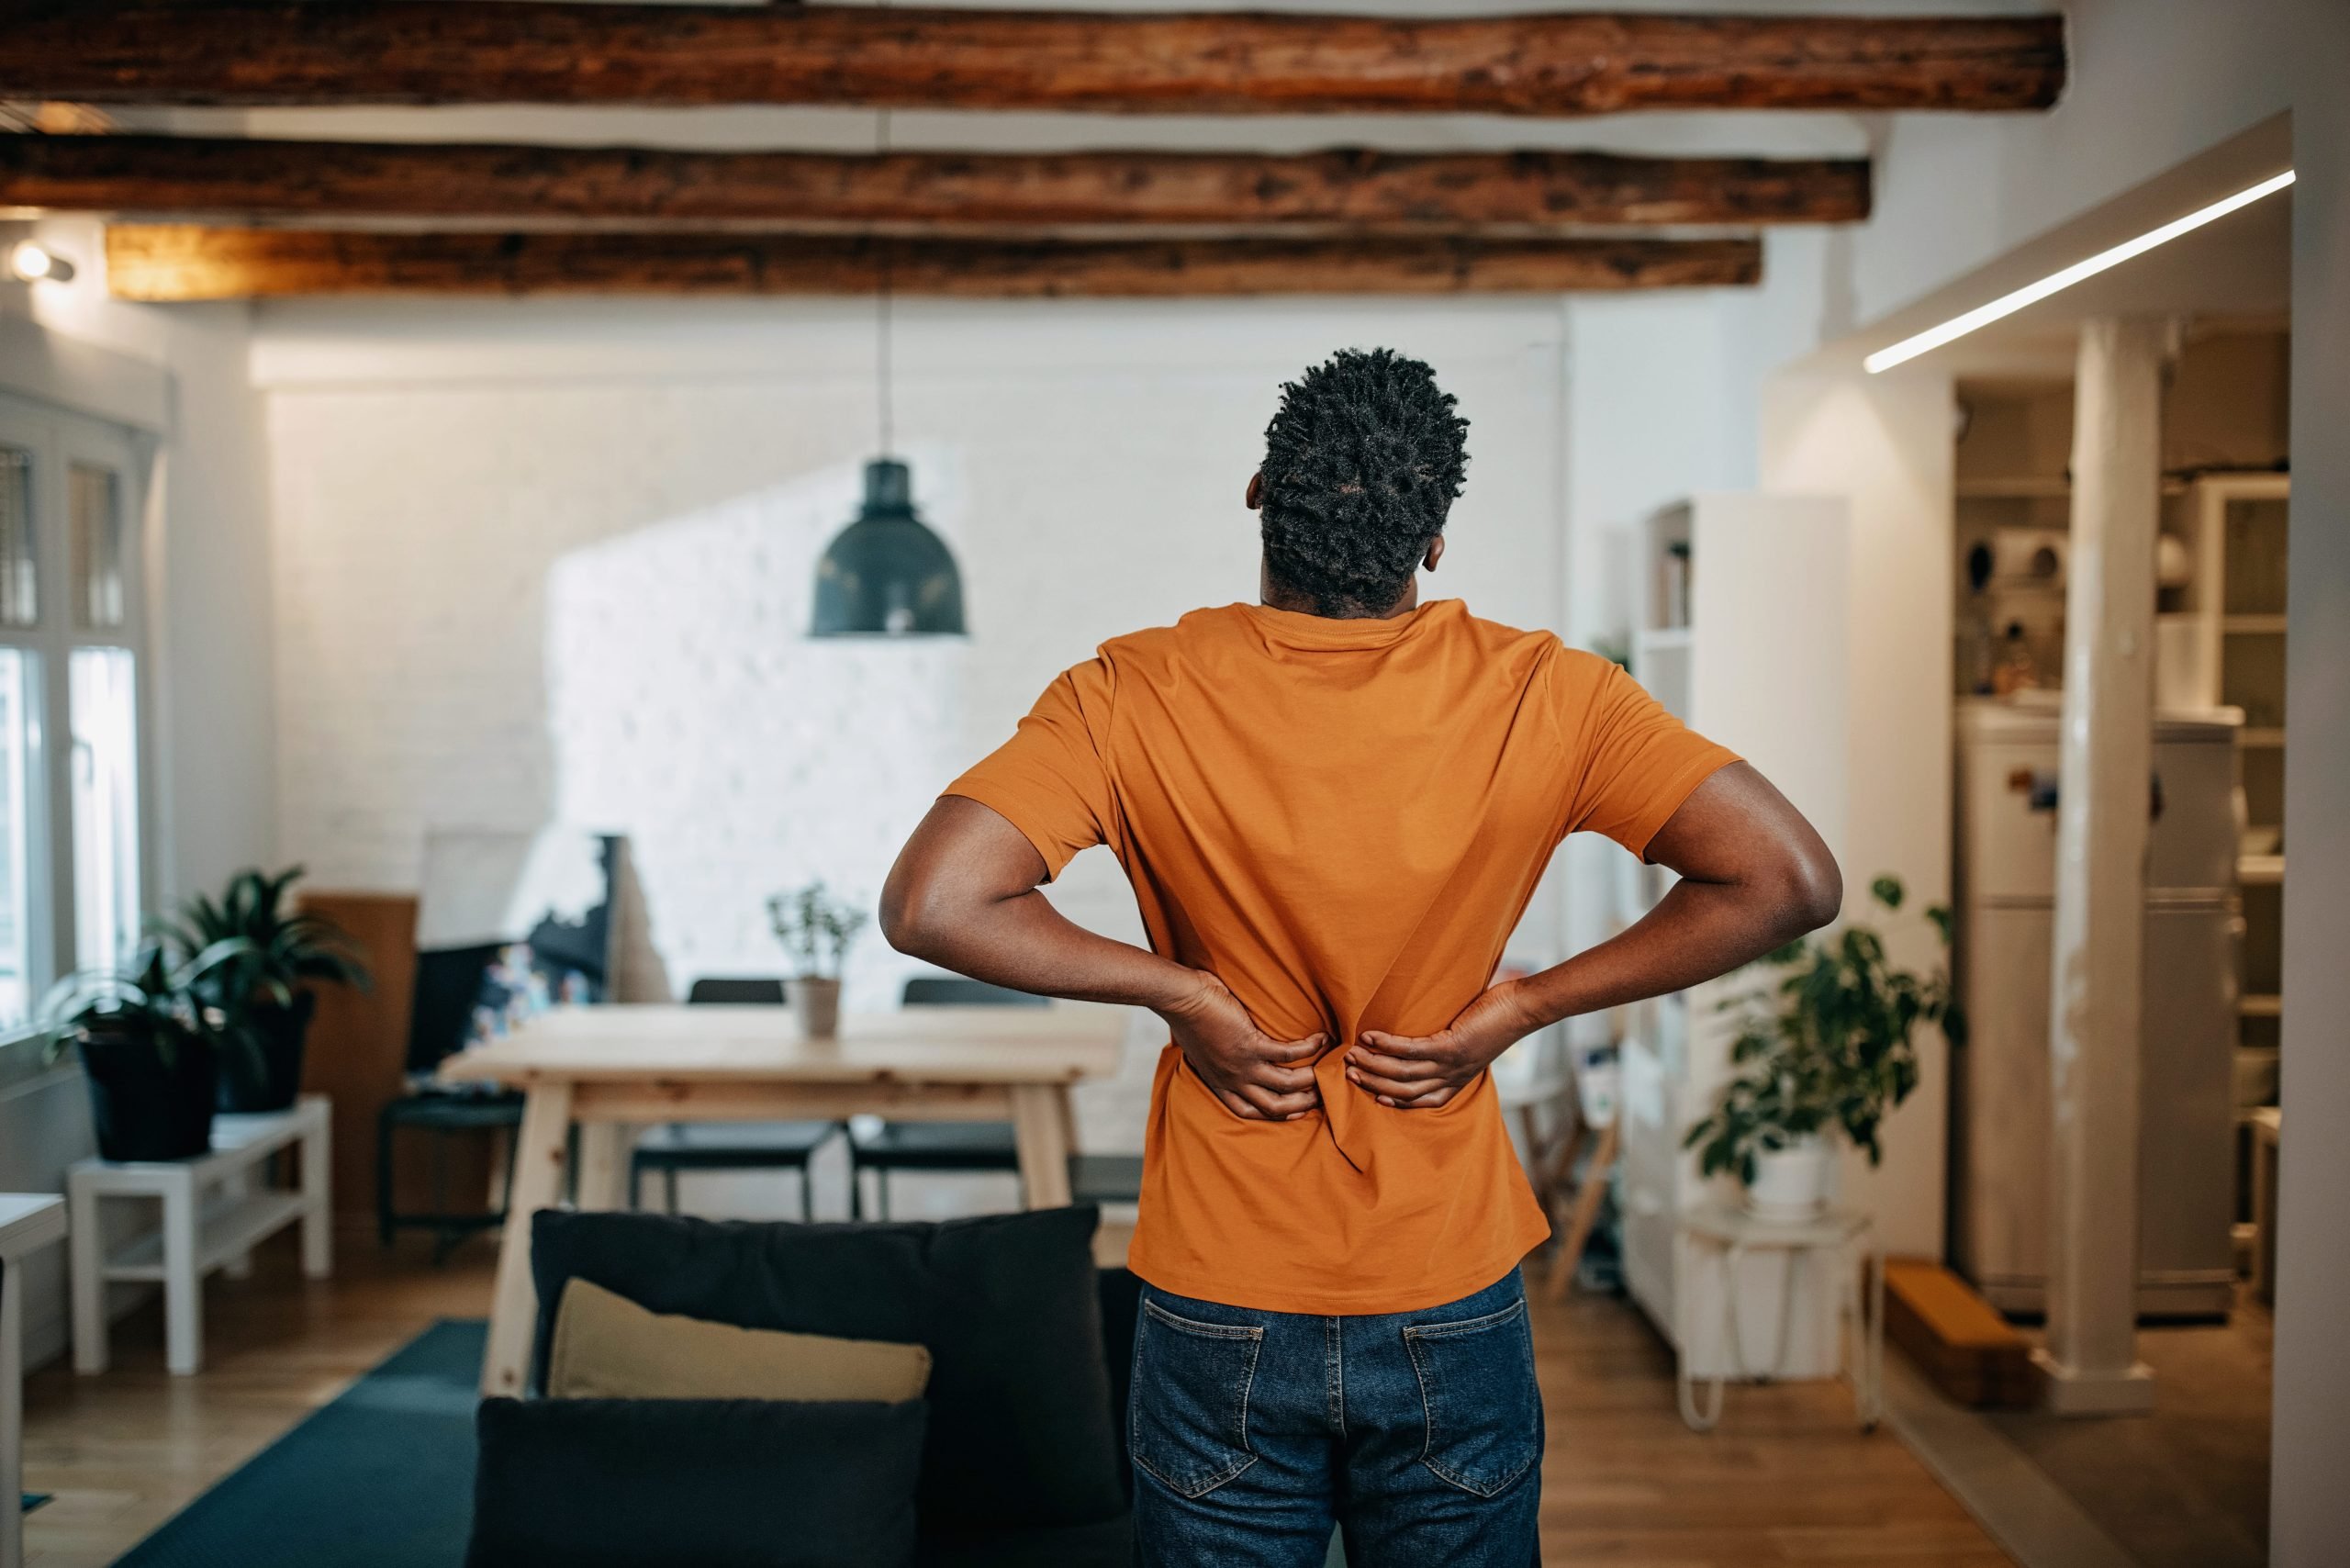  Dolor de espalda: tips para aliviarlo 